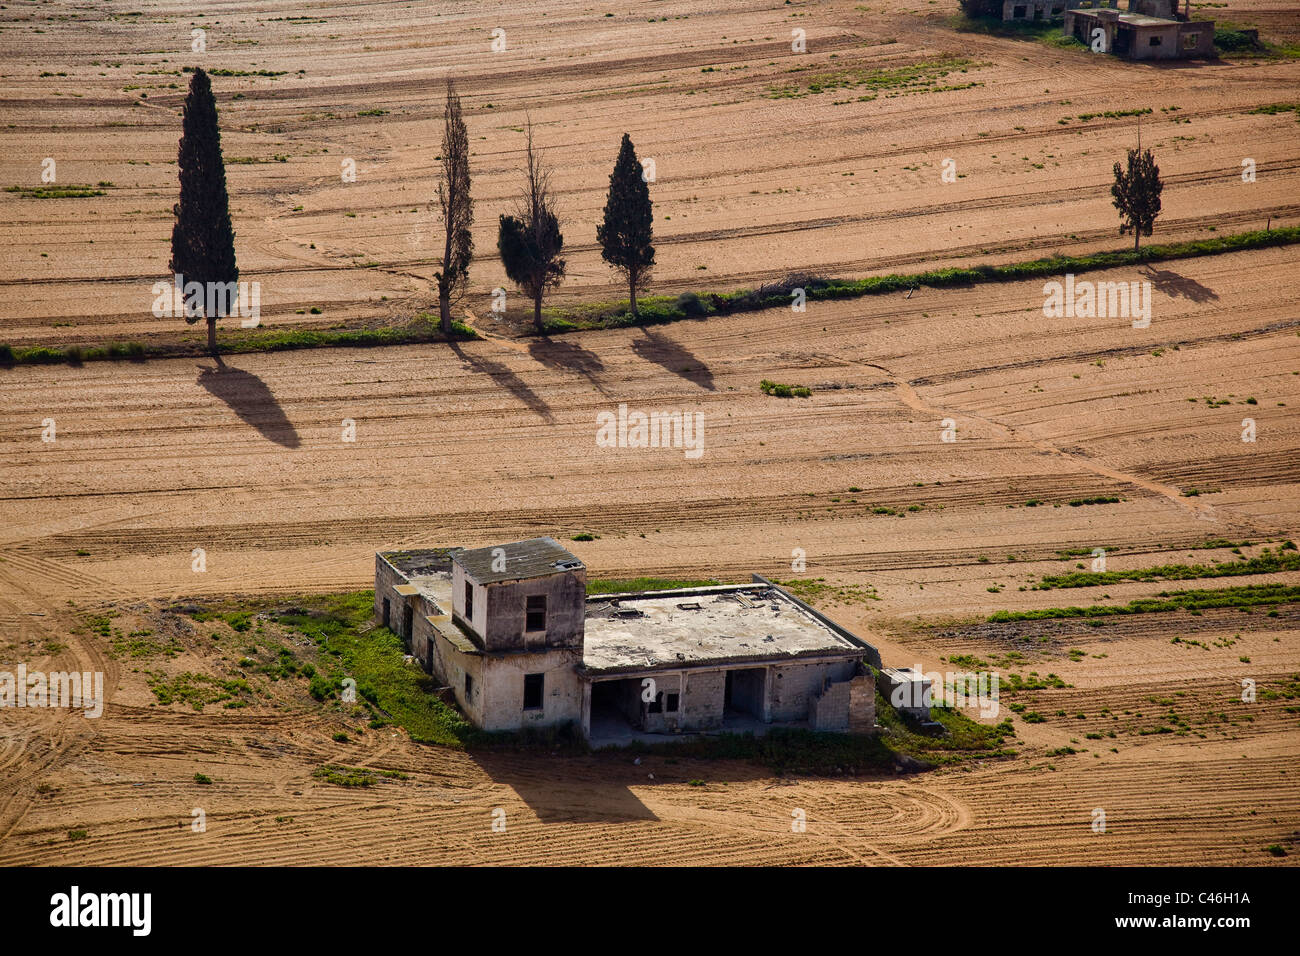 Fotografia aerea dell'agricoltura campi di Sharon Foto Stock